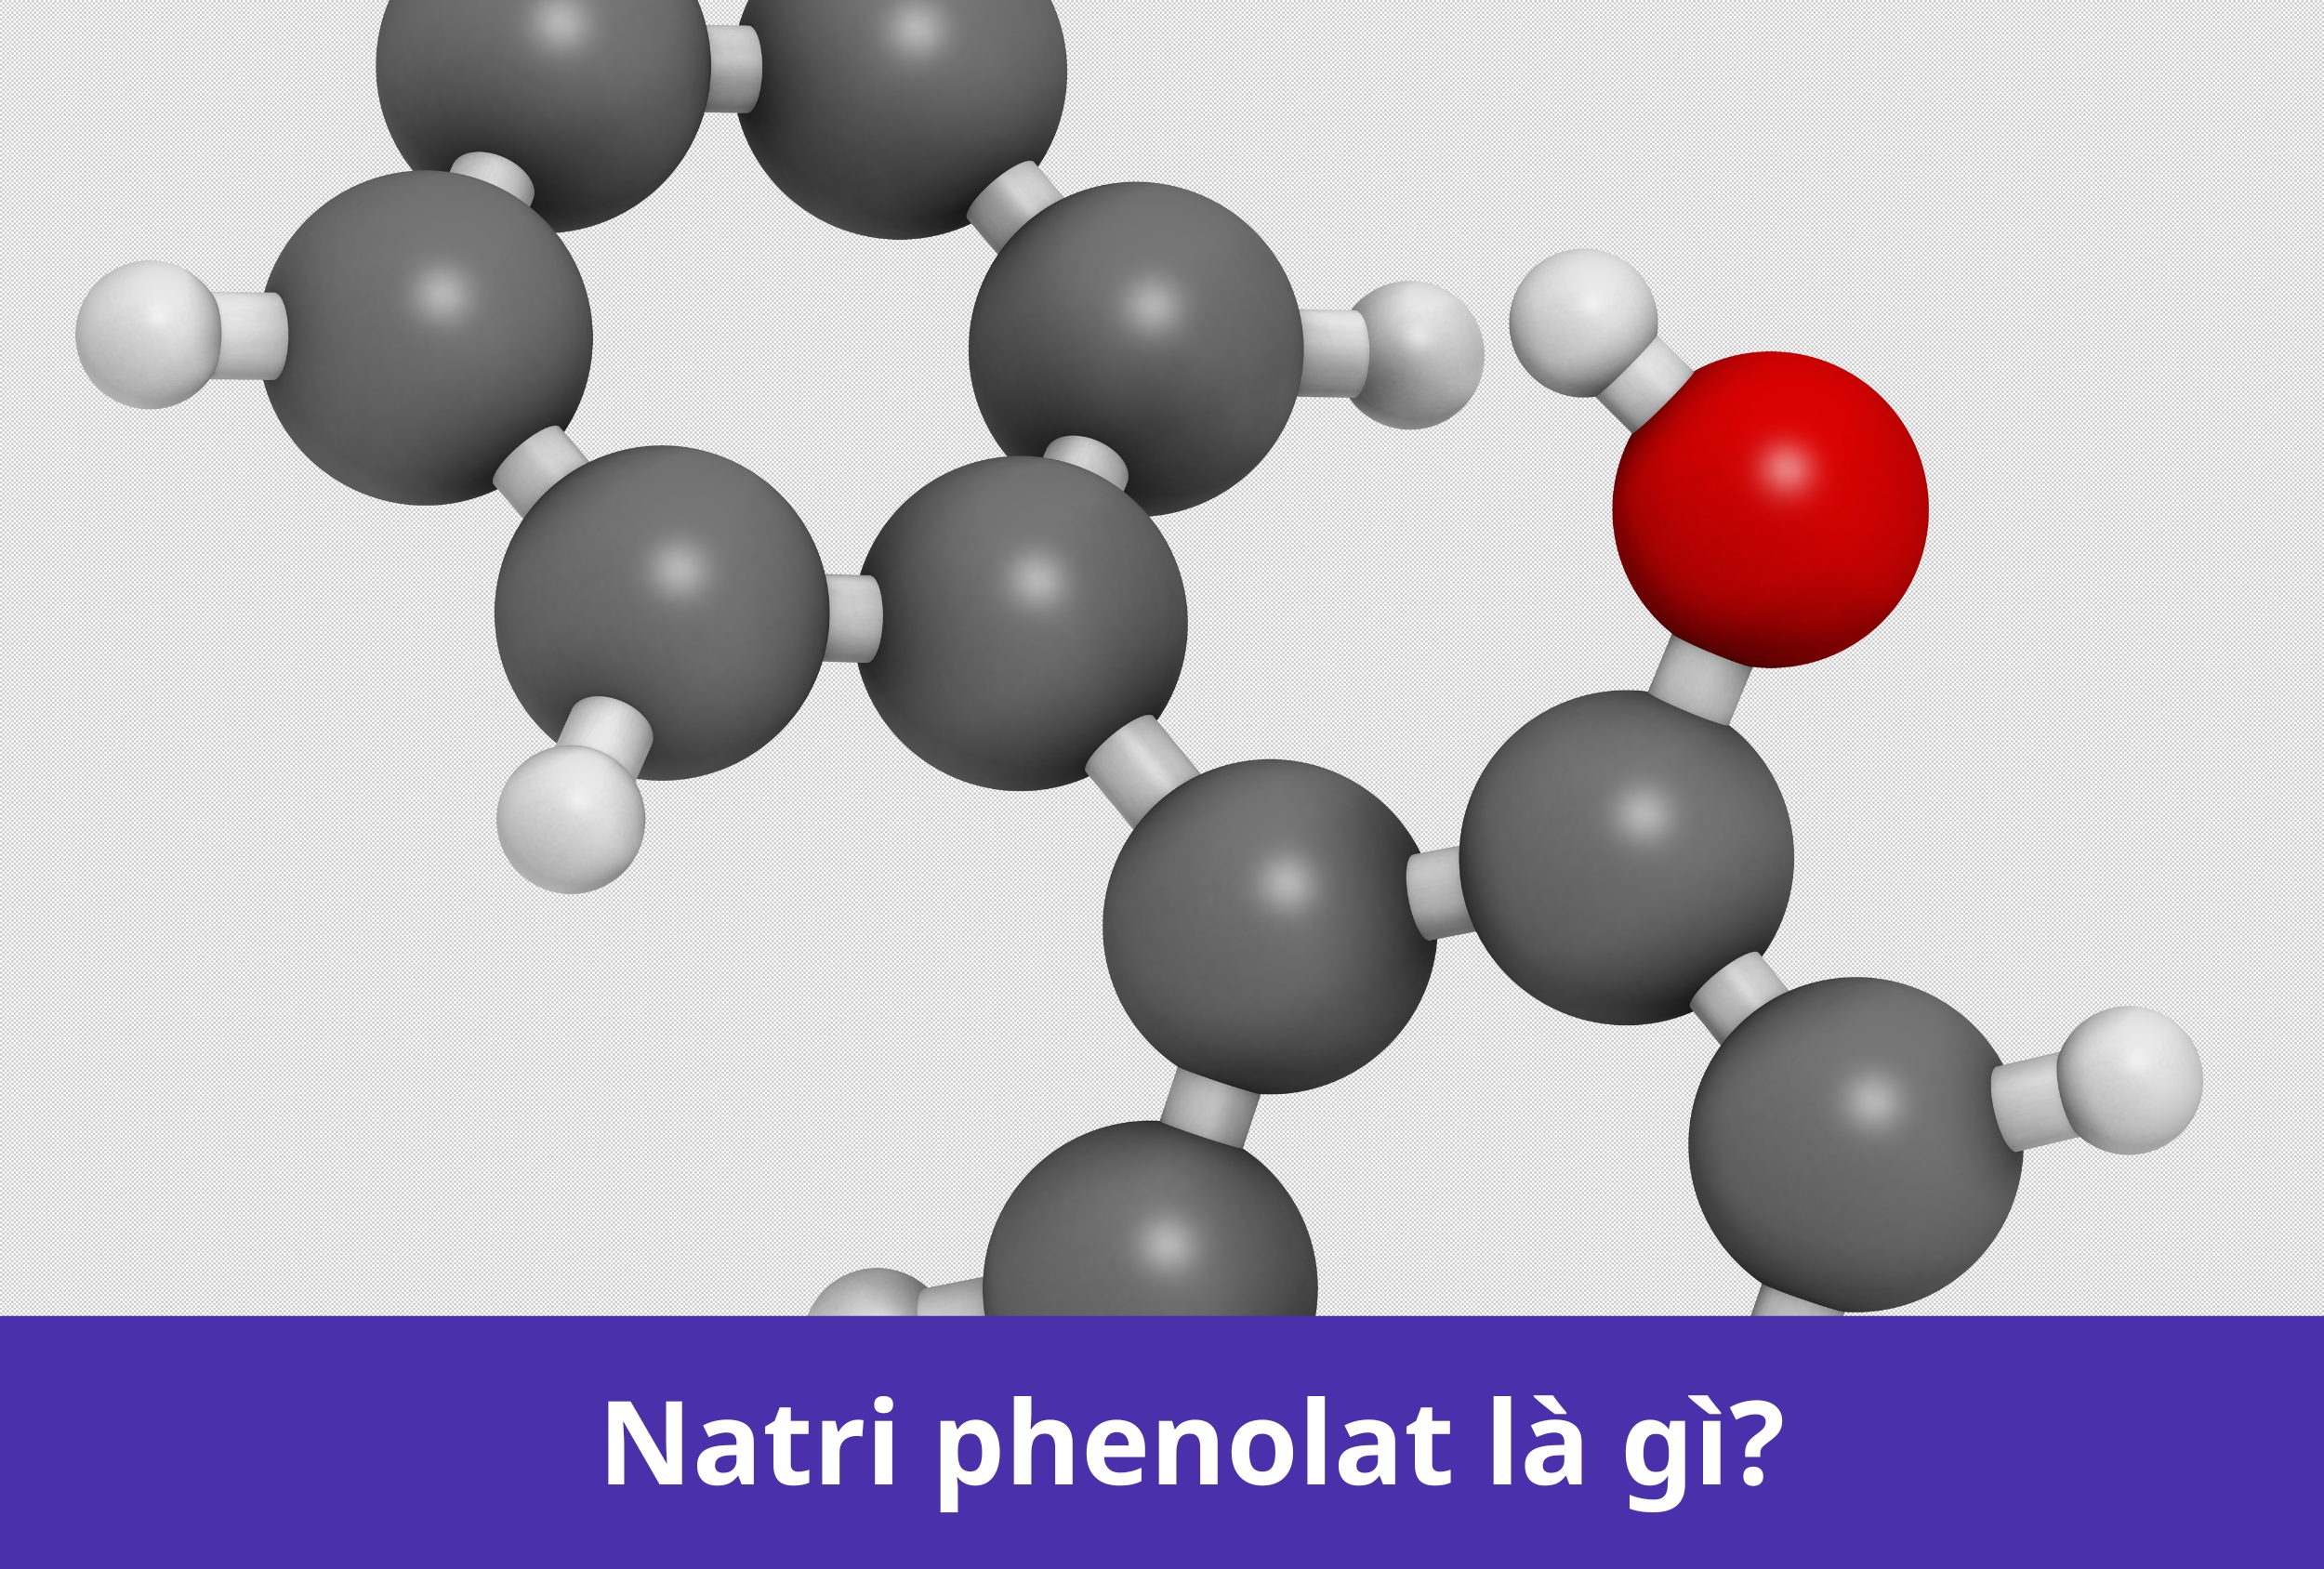  Natri Phenolat là gì? Tính chất, ứng dụng của Natri phenolat